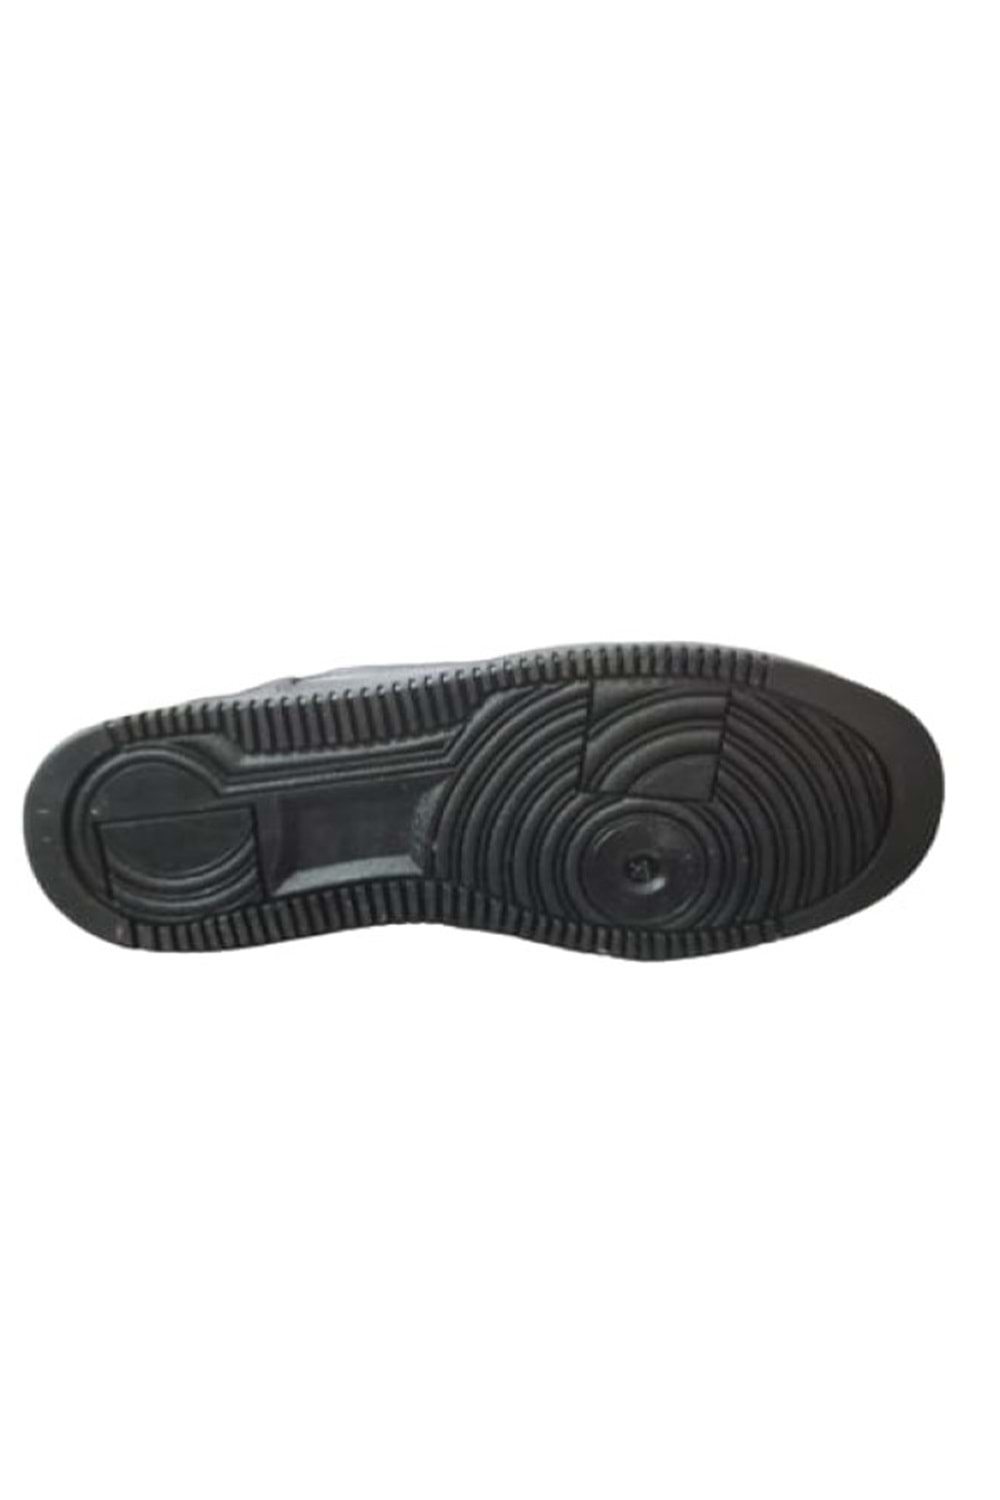 Callion Çocuk Erkek Cırtlı Bağcıklı Sneakers Spor Ayakkabı C-00235 - Siyah